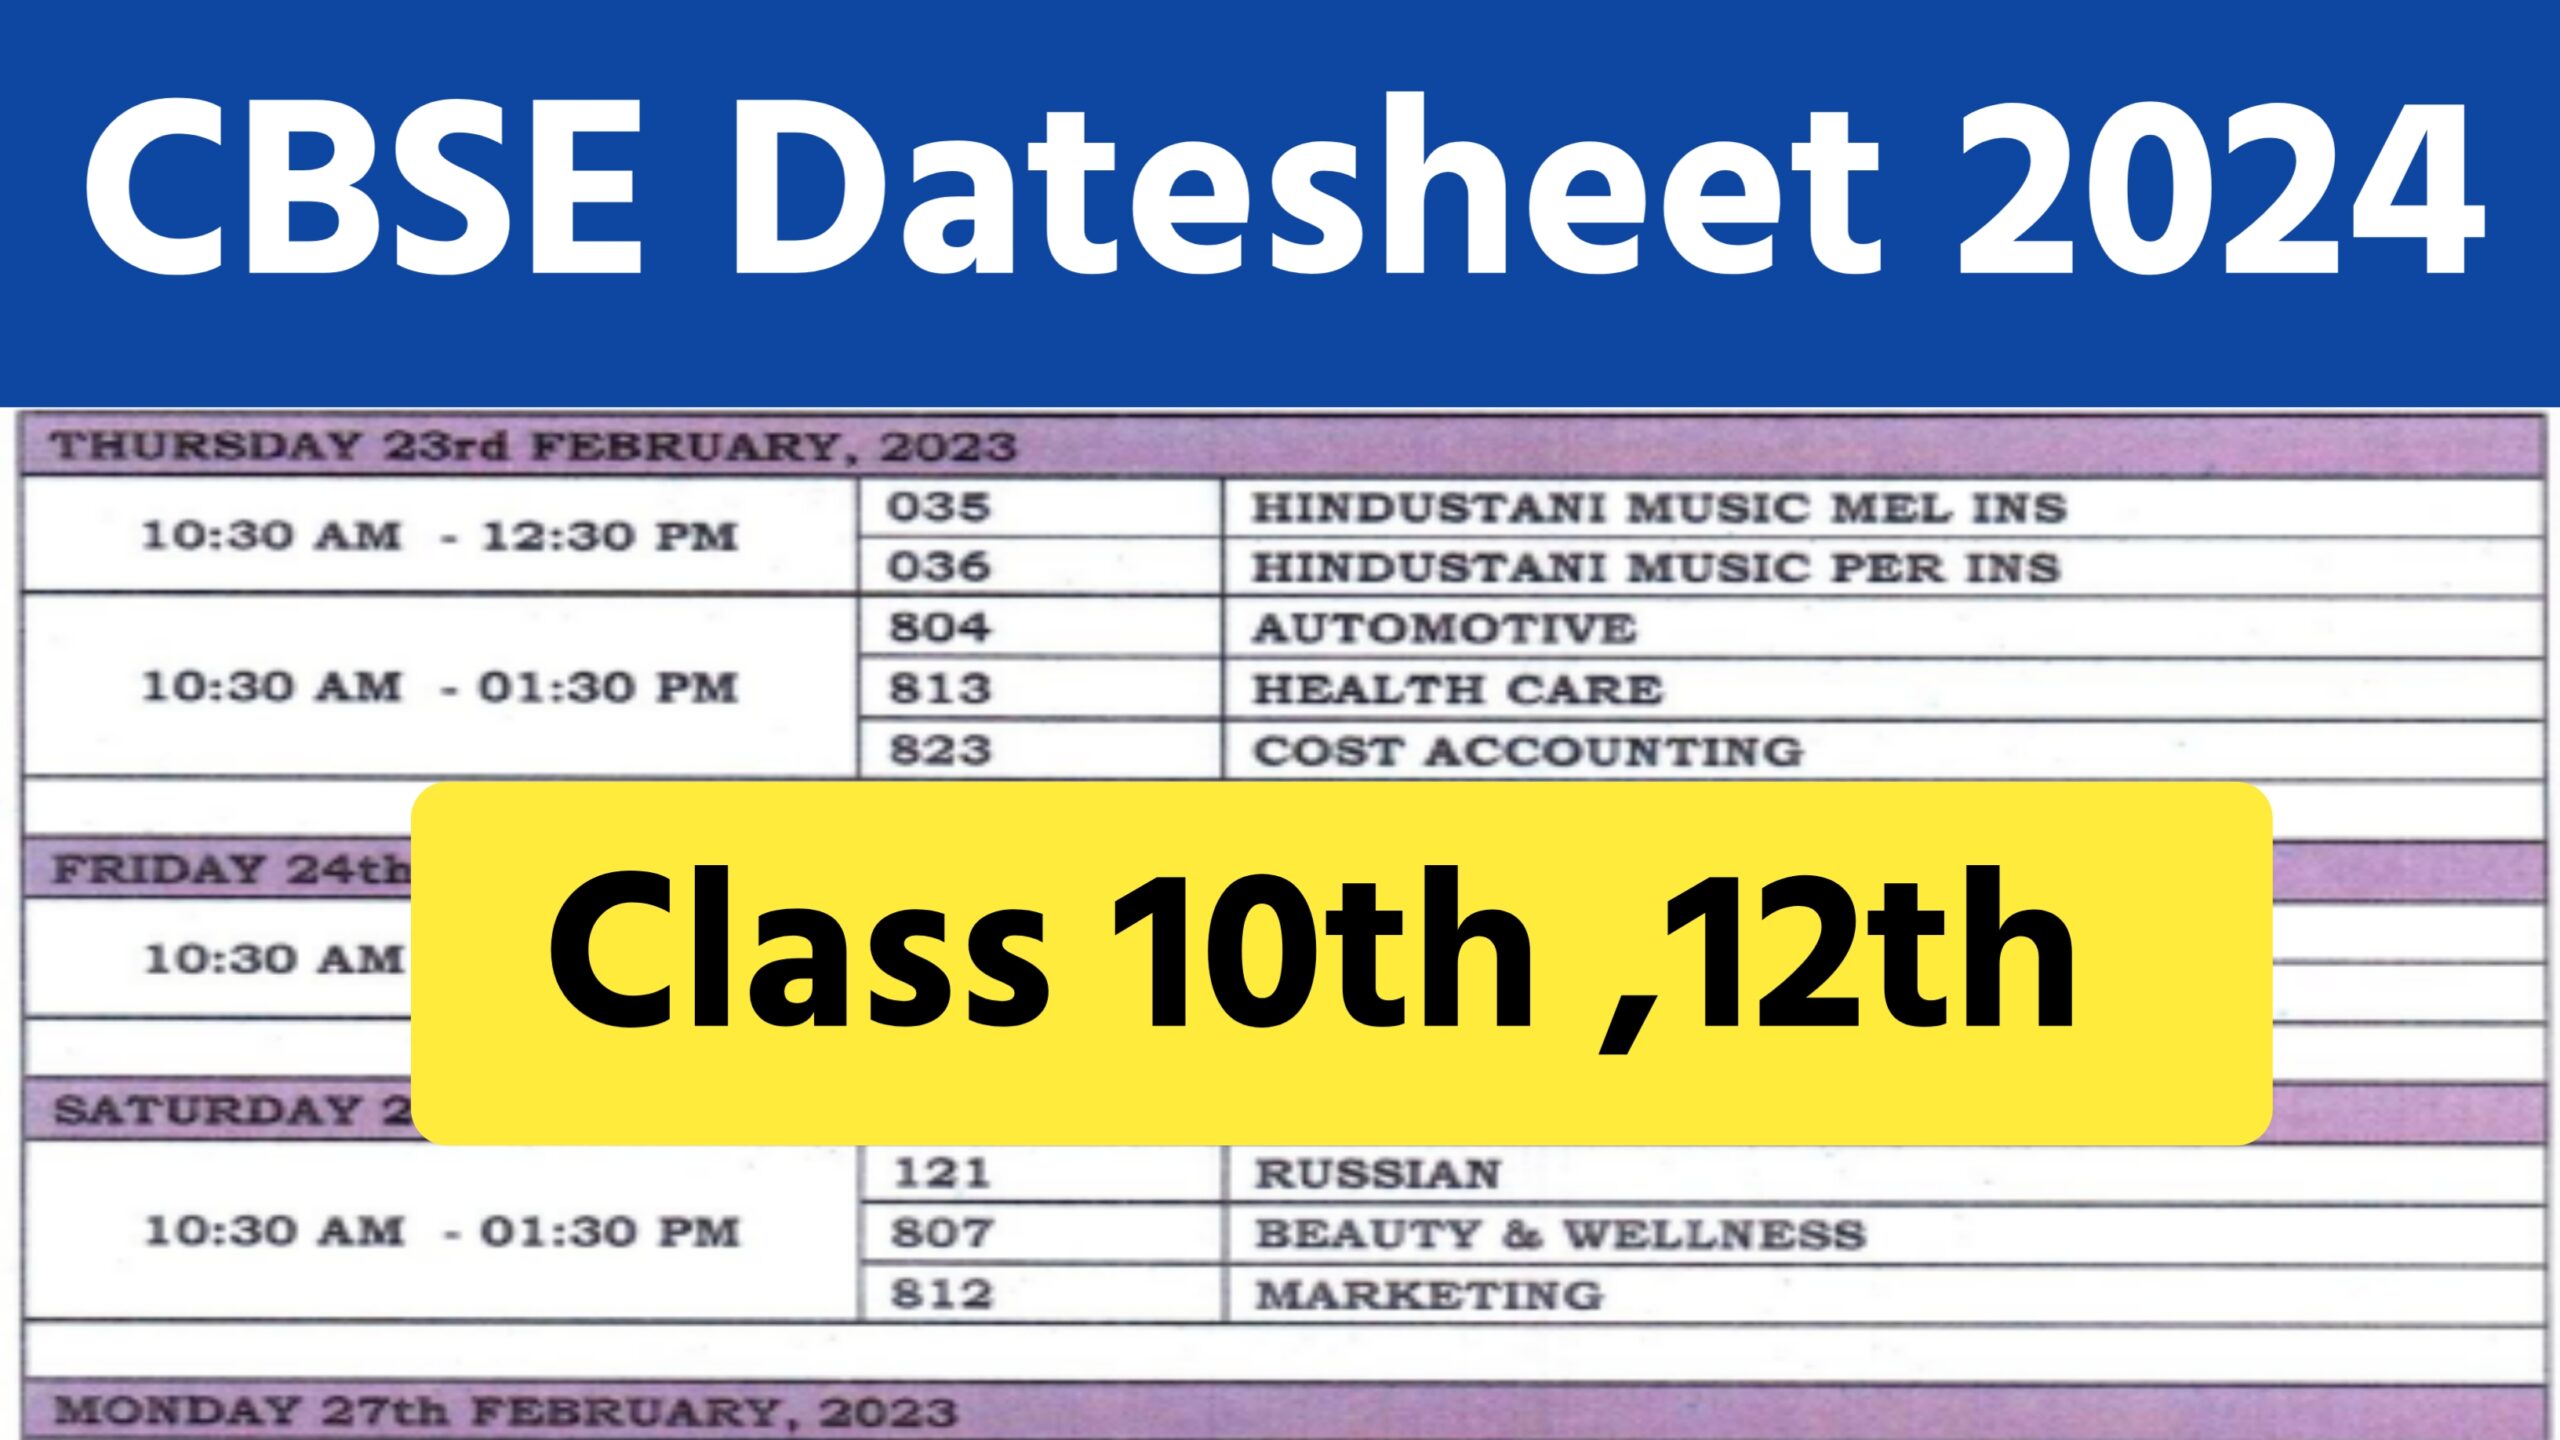 CBSE Datesheet 2024 सीबीएसई की बोर्ड परीक्षा इस दिन से शुरू, टाइम टेबल